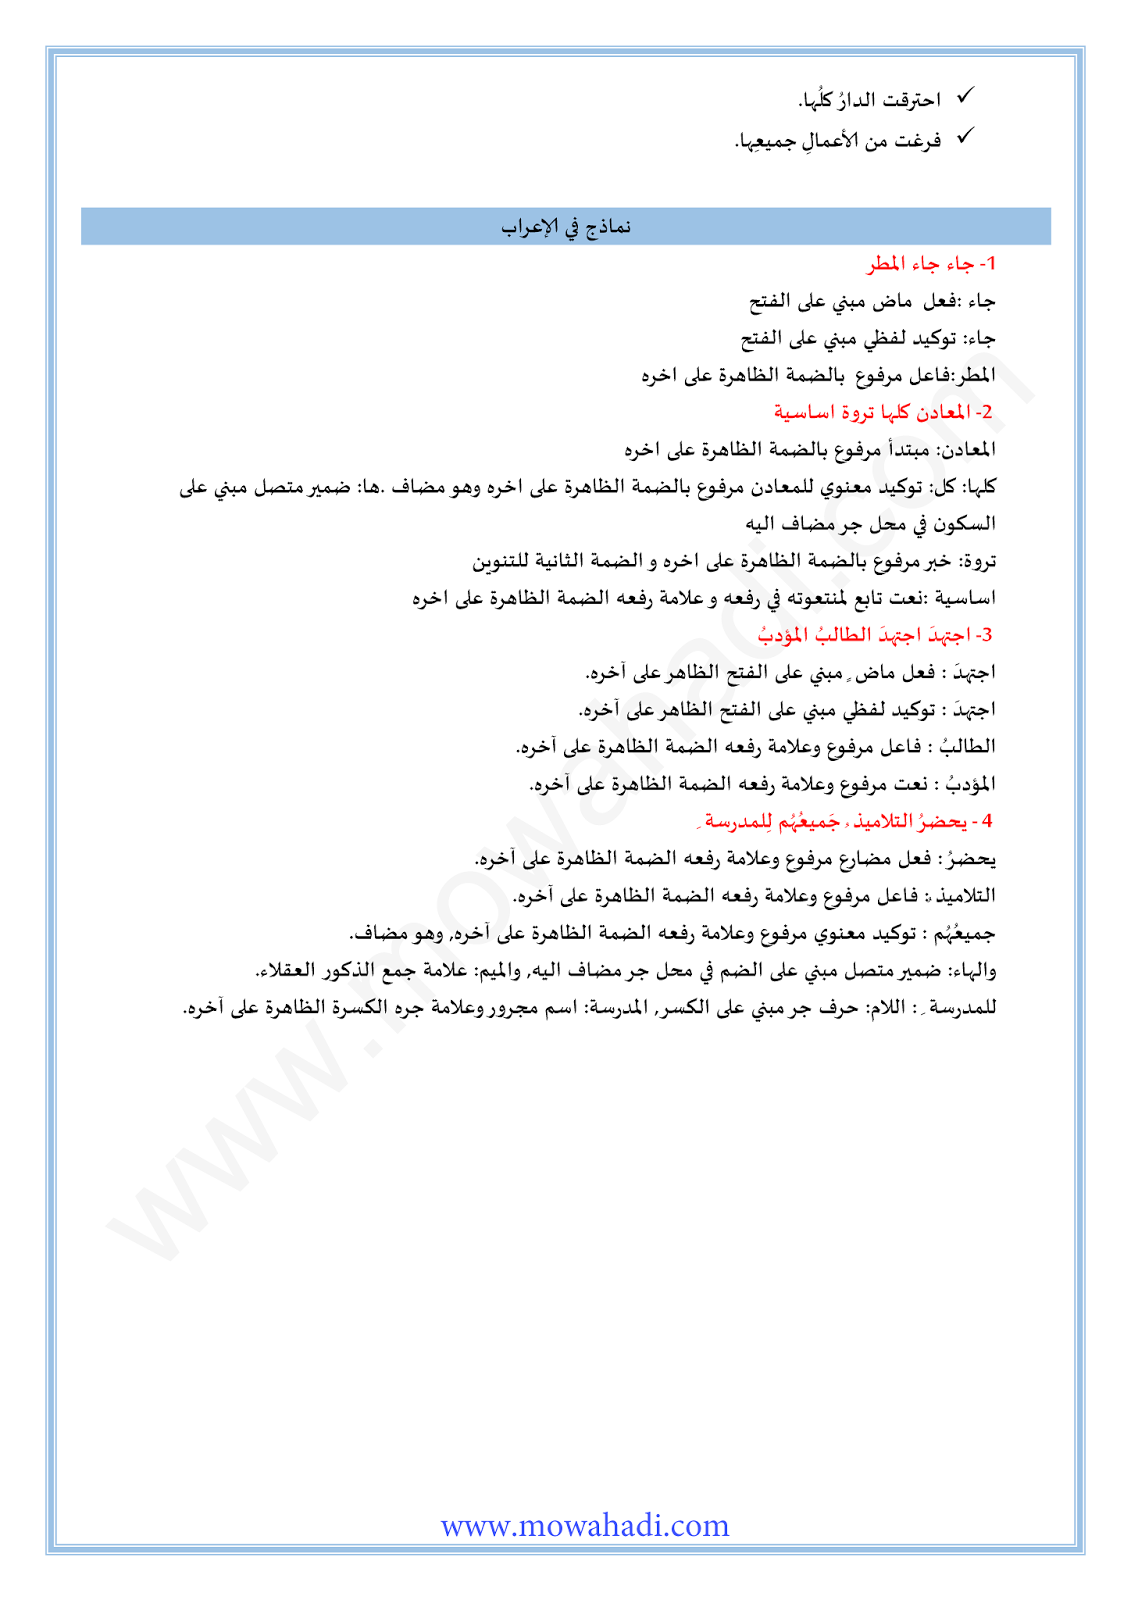 الدرس اللغوي التوكيد للسنة الثانية اعدادي في مادة اللغة العربية 17-cours-loghawi2_003